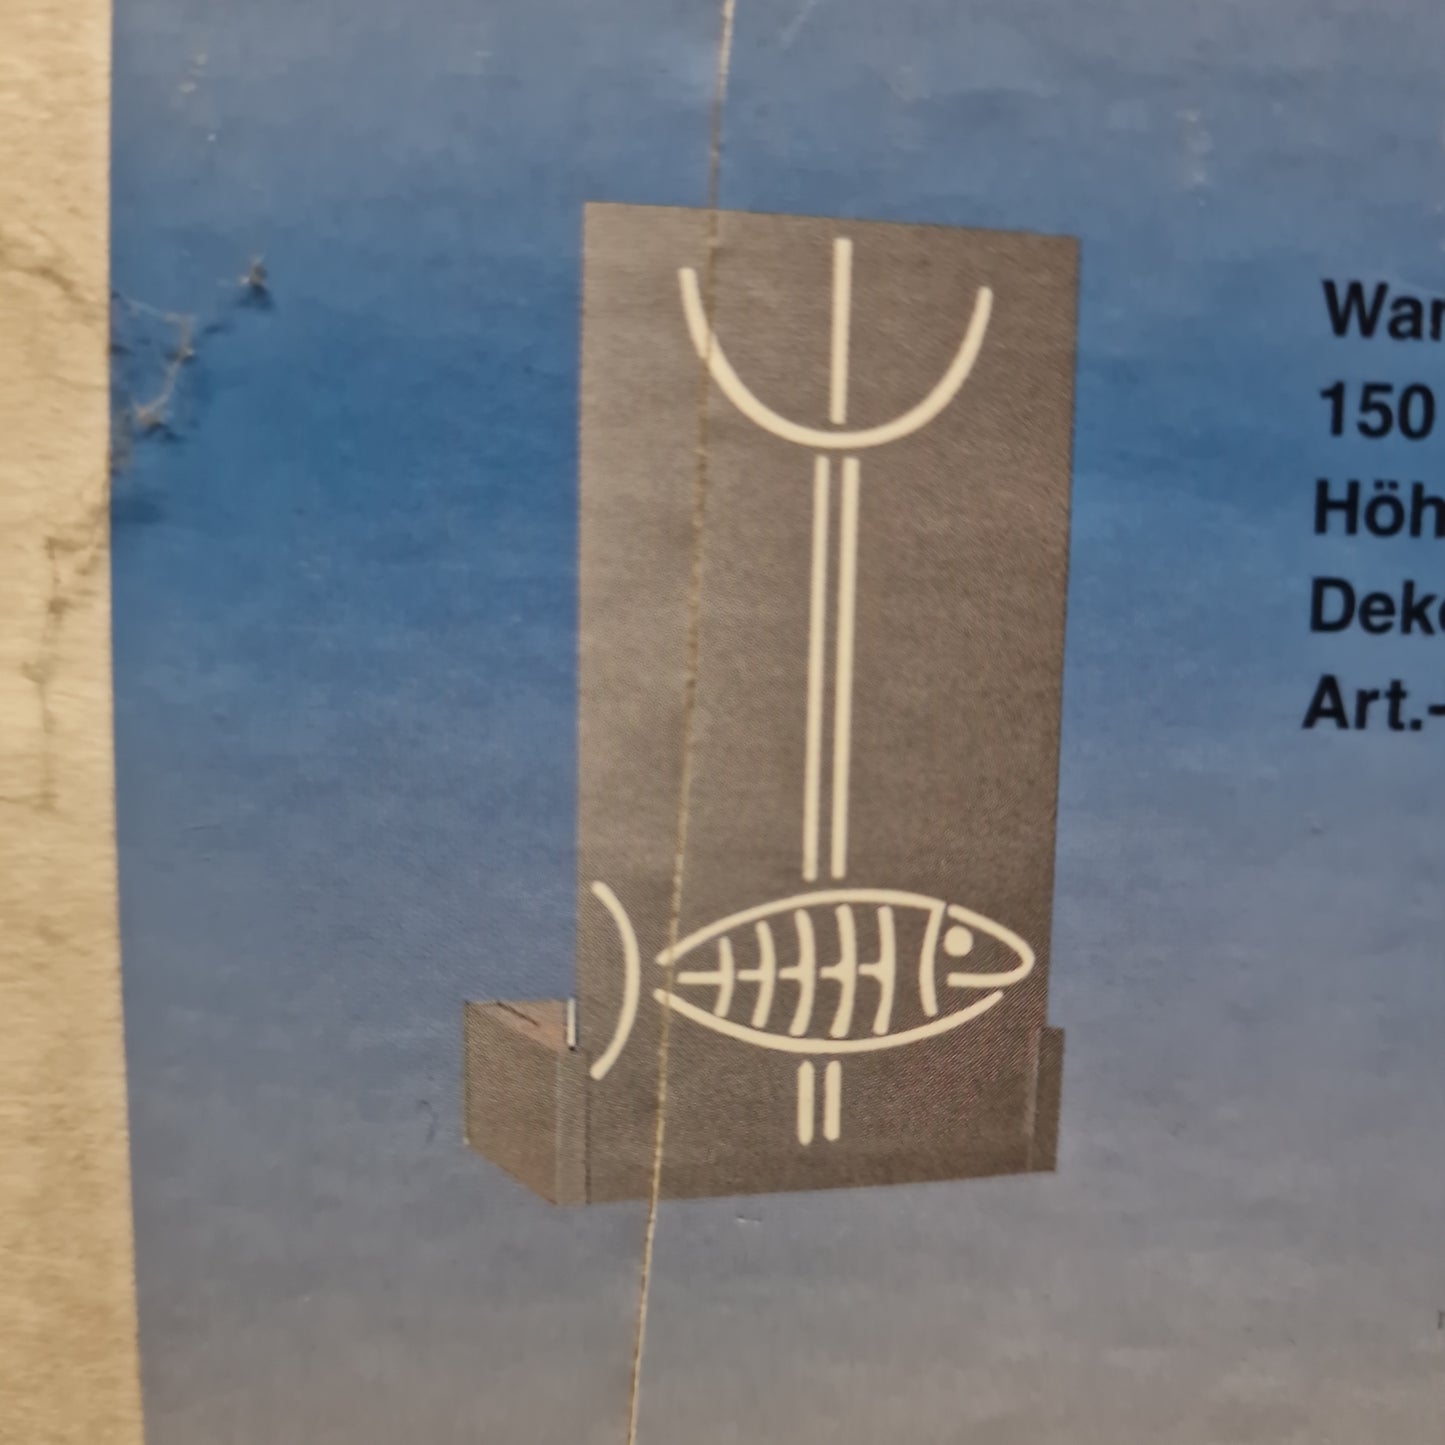 Pandora Fish - Wandlampe - Wandfluter - Dekovorsatz fish (titan/weiss) -150 Watt / 230V